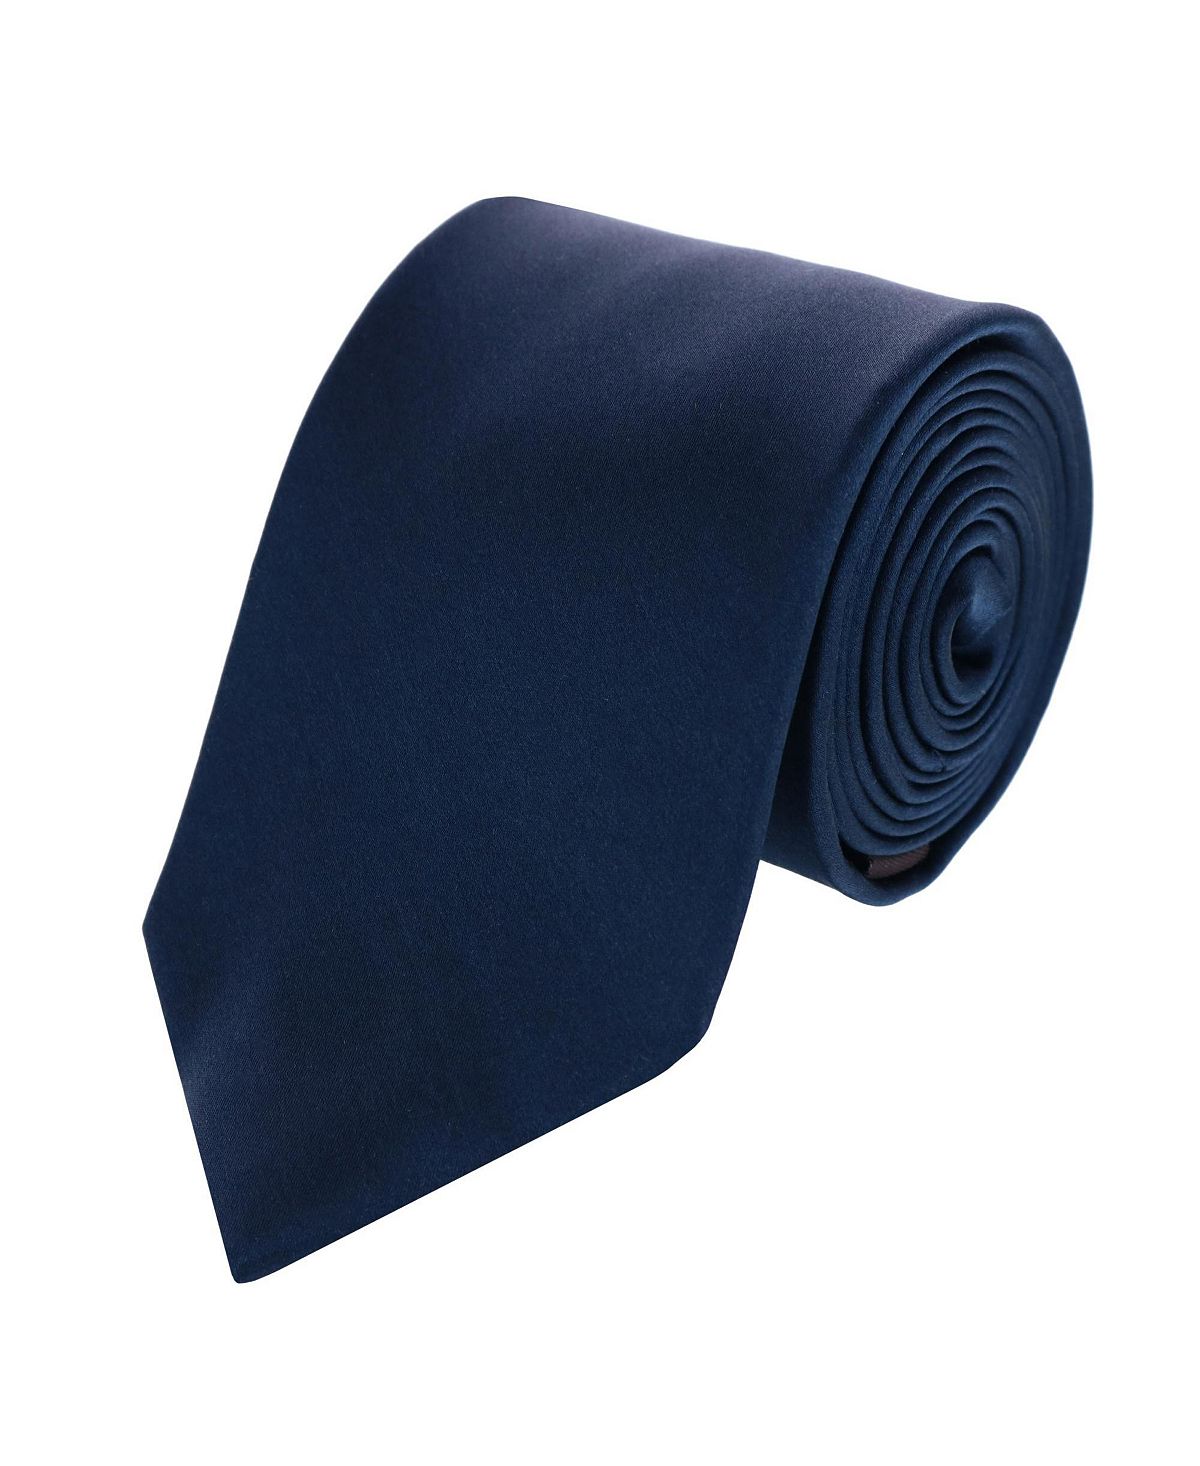 Однотонный шелковый галстук Sutton TRAFALGAR однотонный шелковый галстук бабочка sutton trafalgar